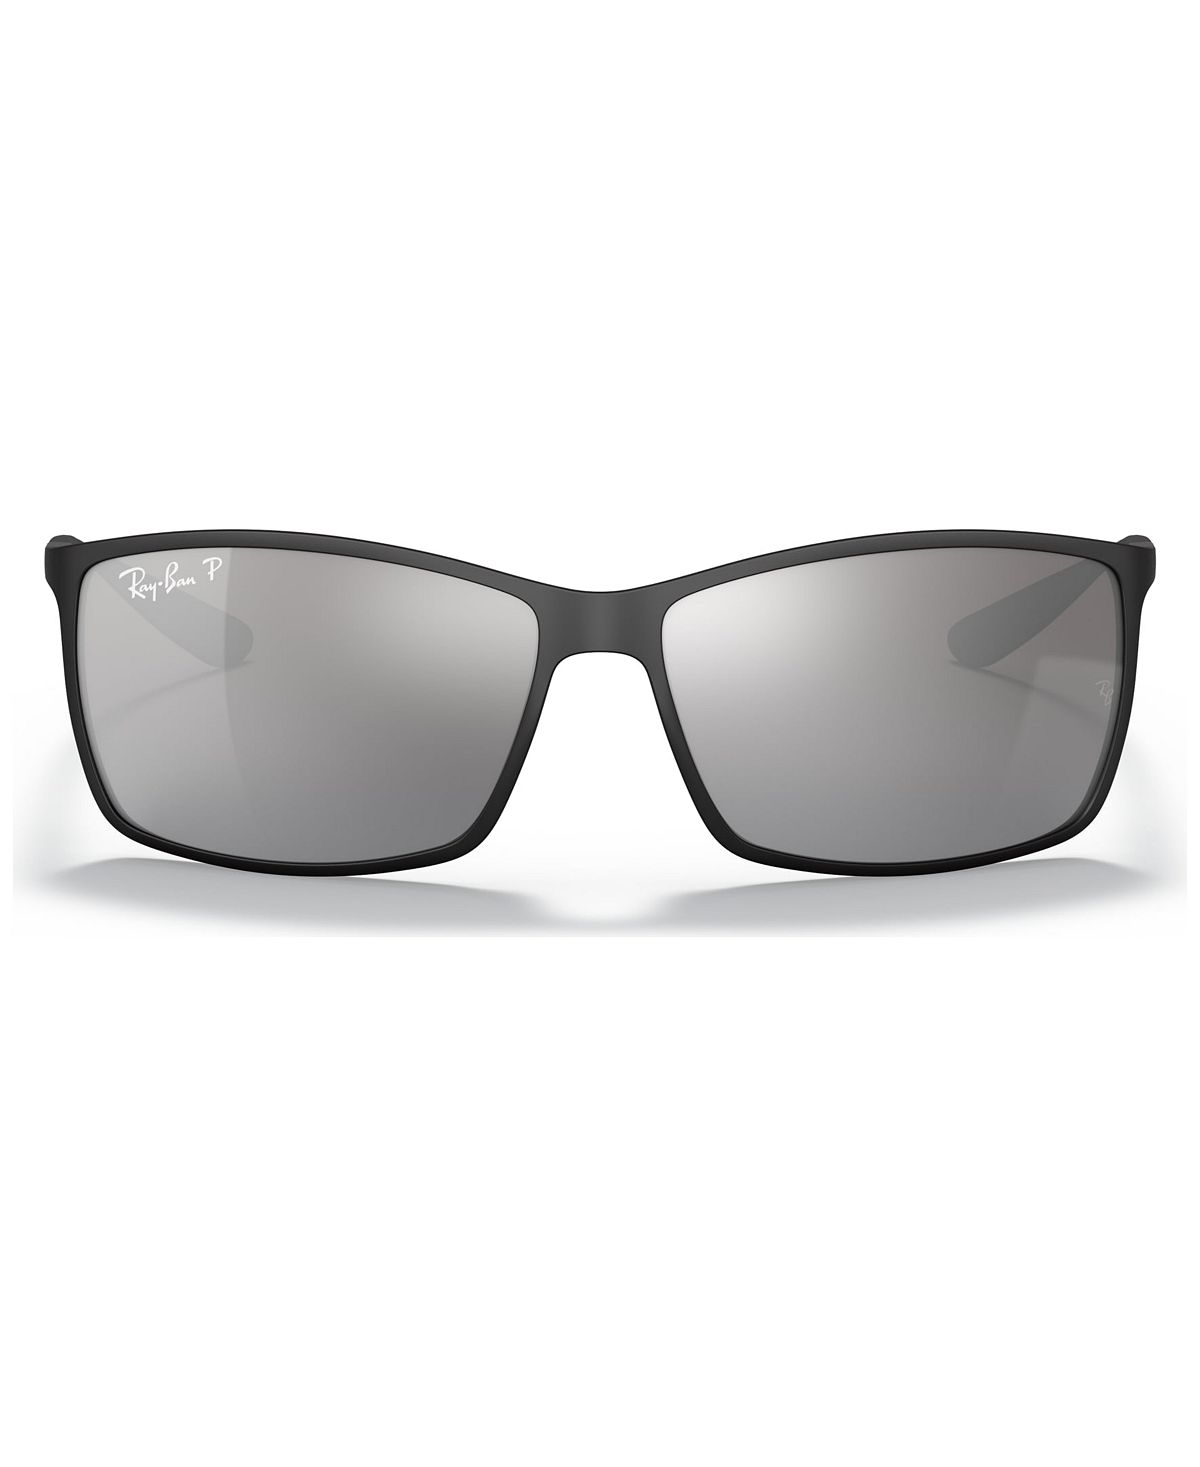 Поляризованные солнцезащитные очки, RB4179 LITEFORCE Ray-Ban